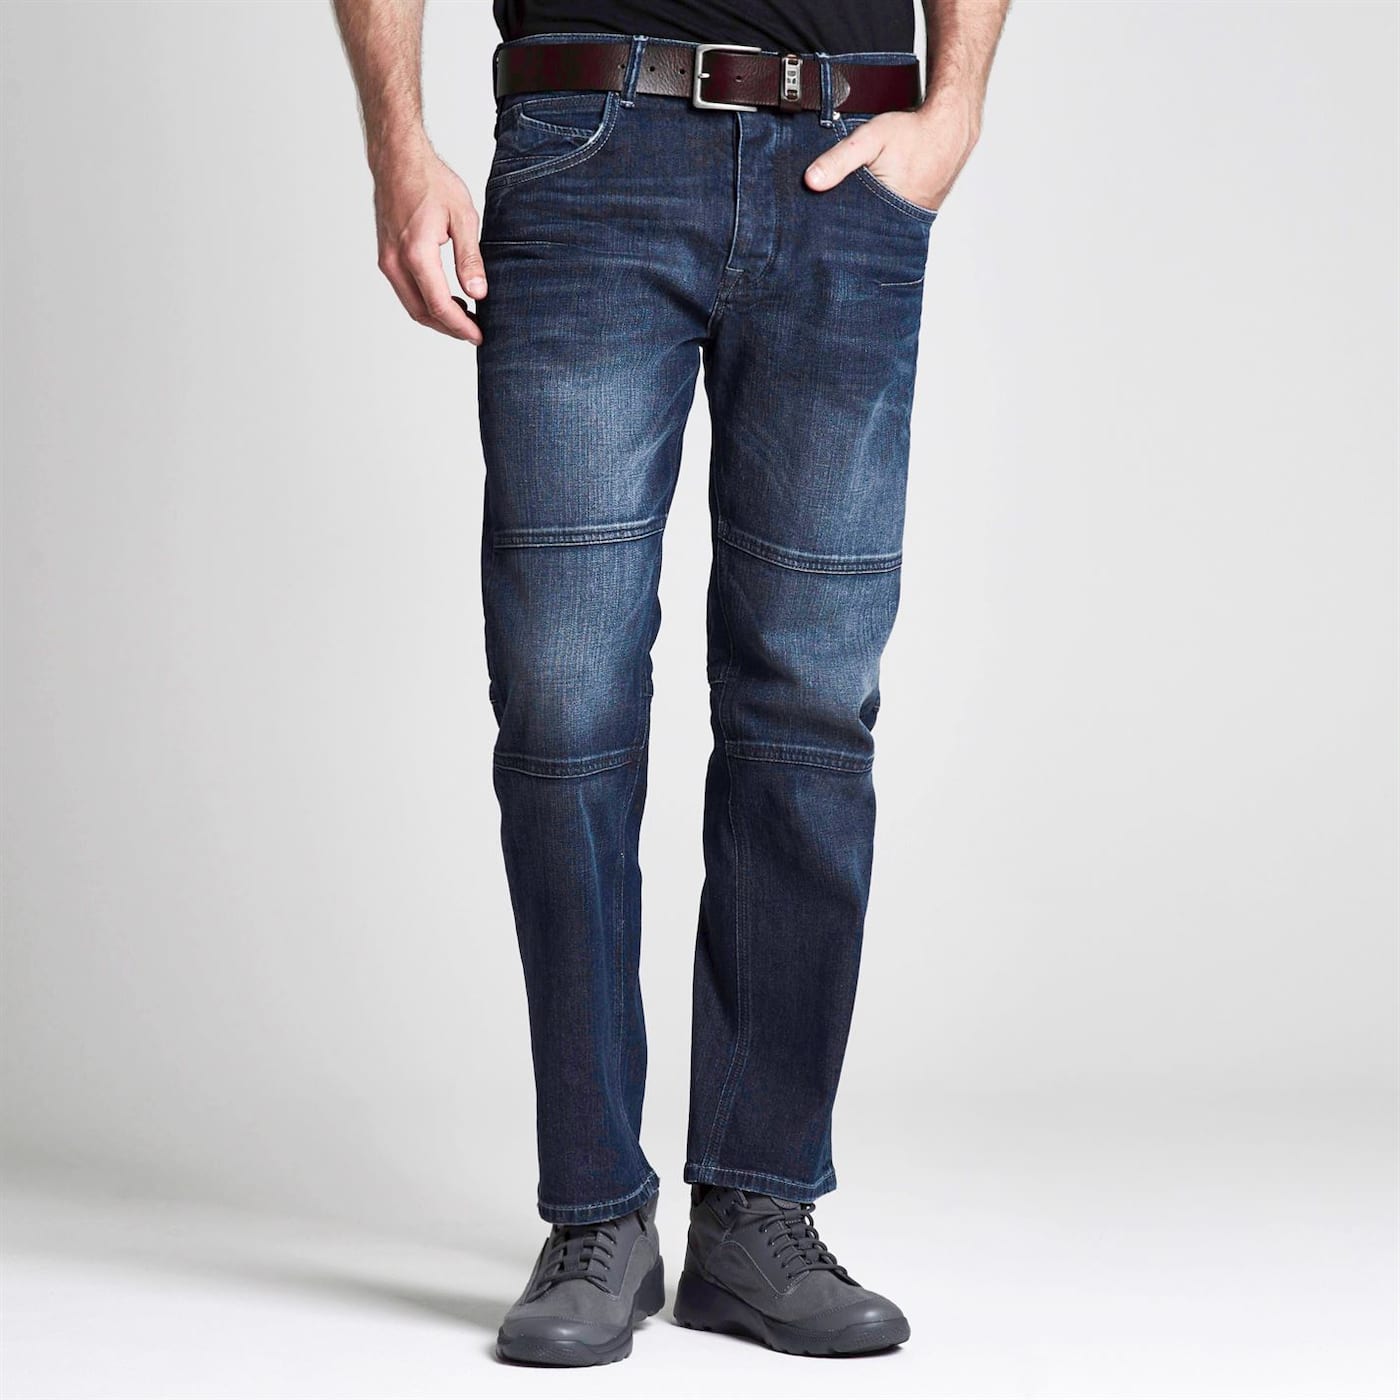 firetrap blackseal jeans